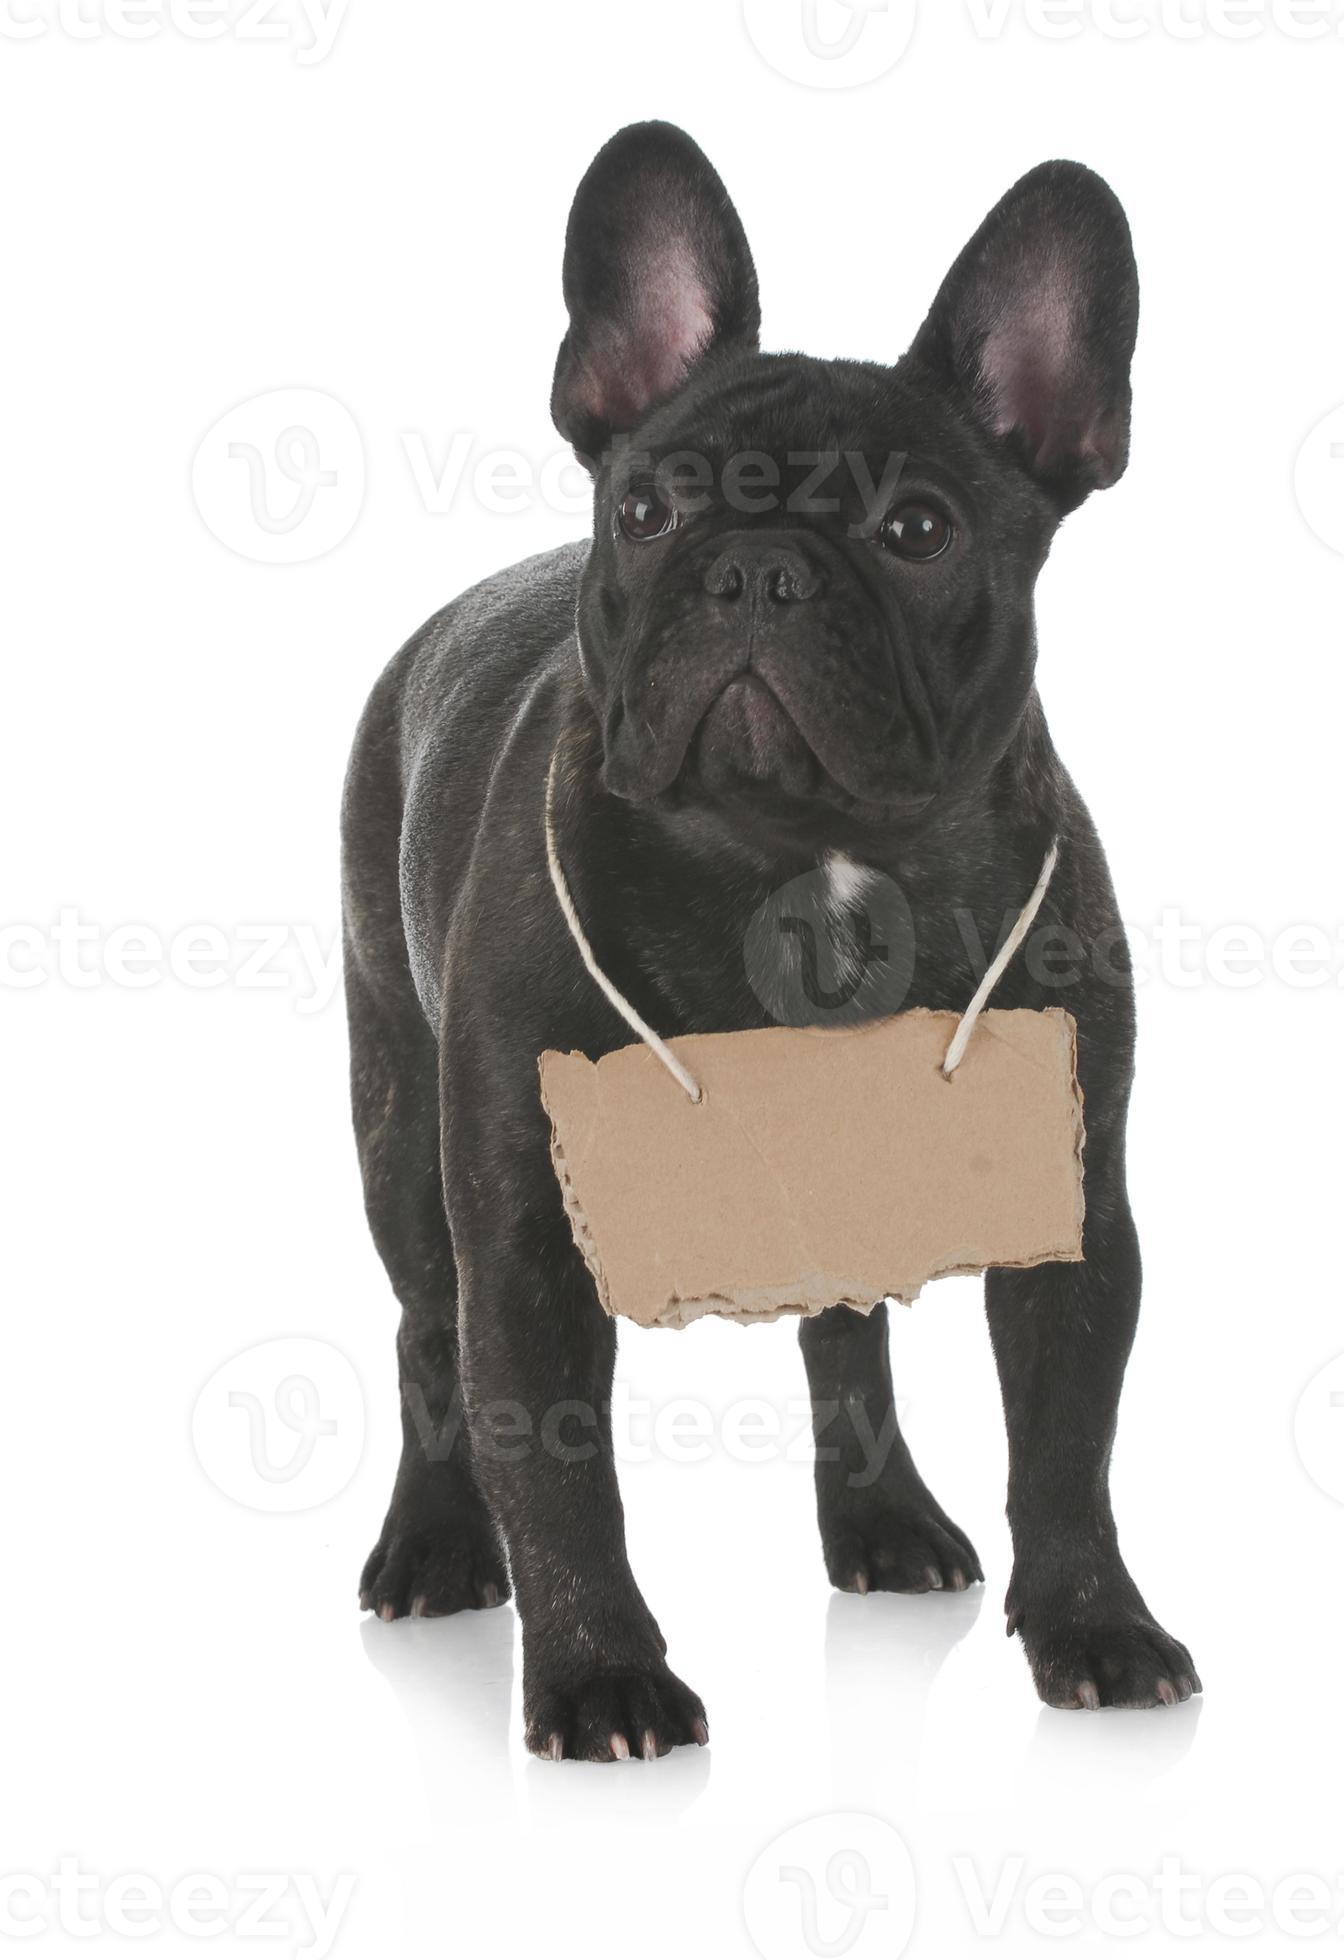 cachorros de perro negro divertido perrito sonriente una pata y lindo perrito en blanco foto